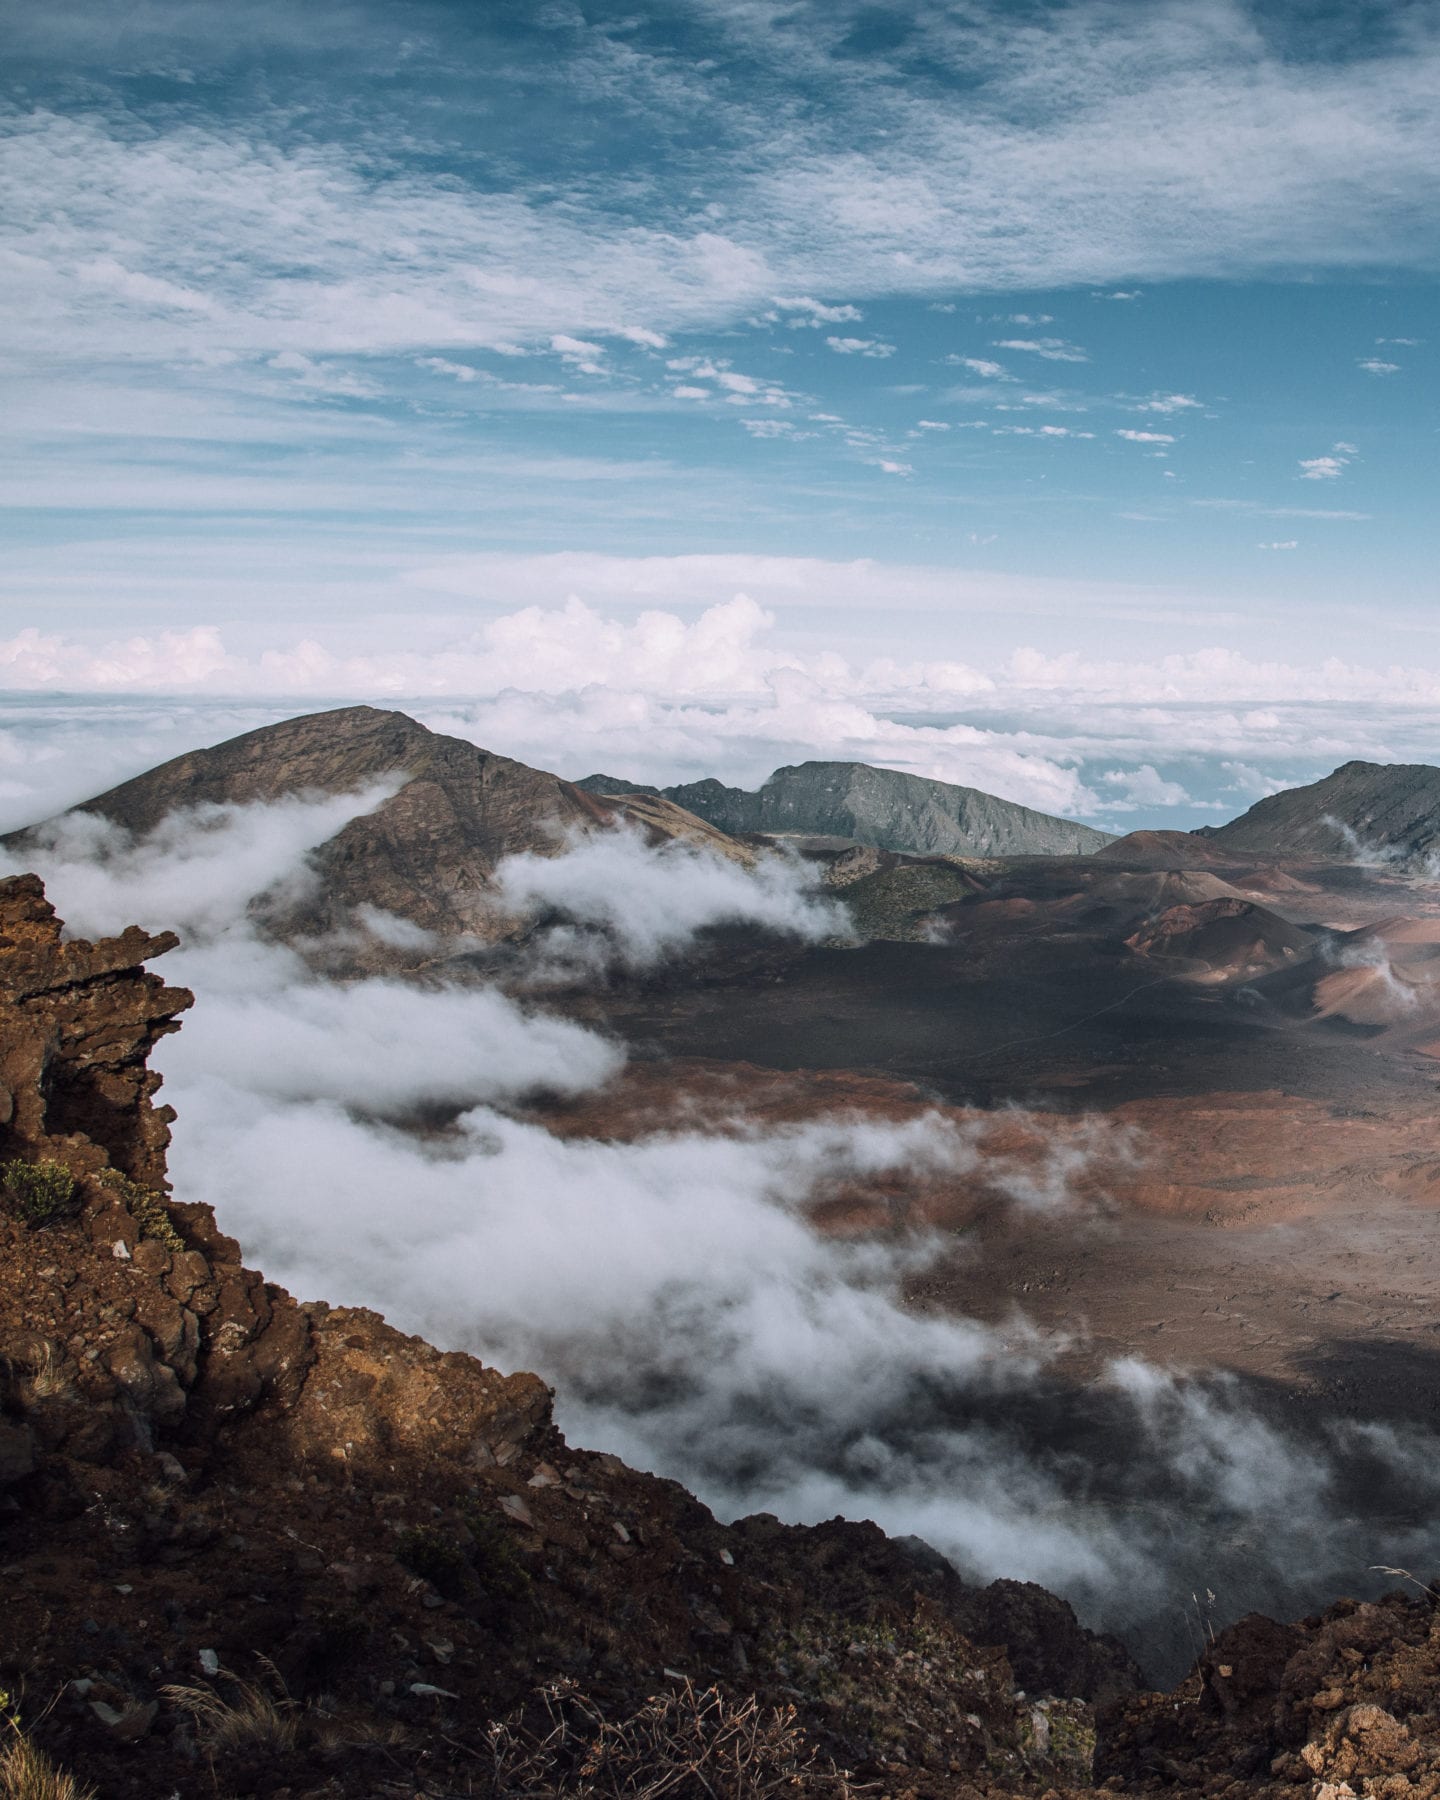 Haleakala National Park in Maui, Hawaii (2021 Guide)